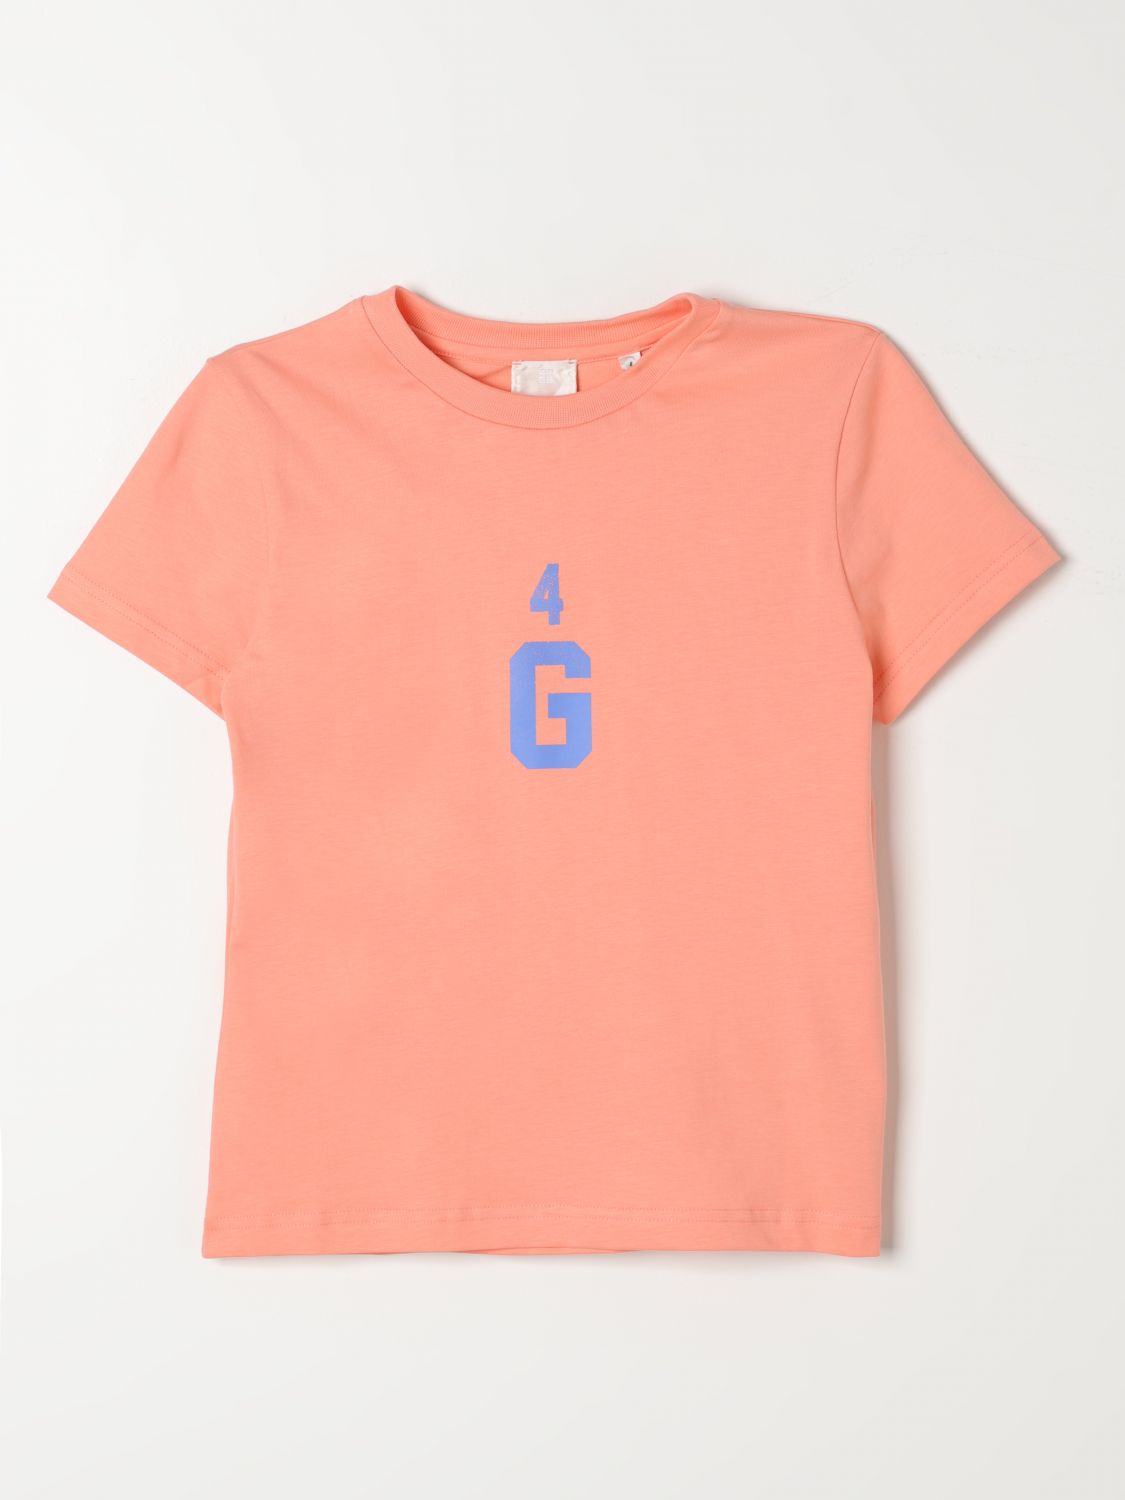 Givenchy T-shirt  Kids Color Orange